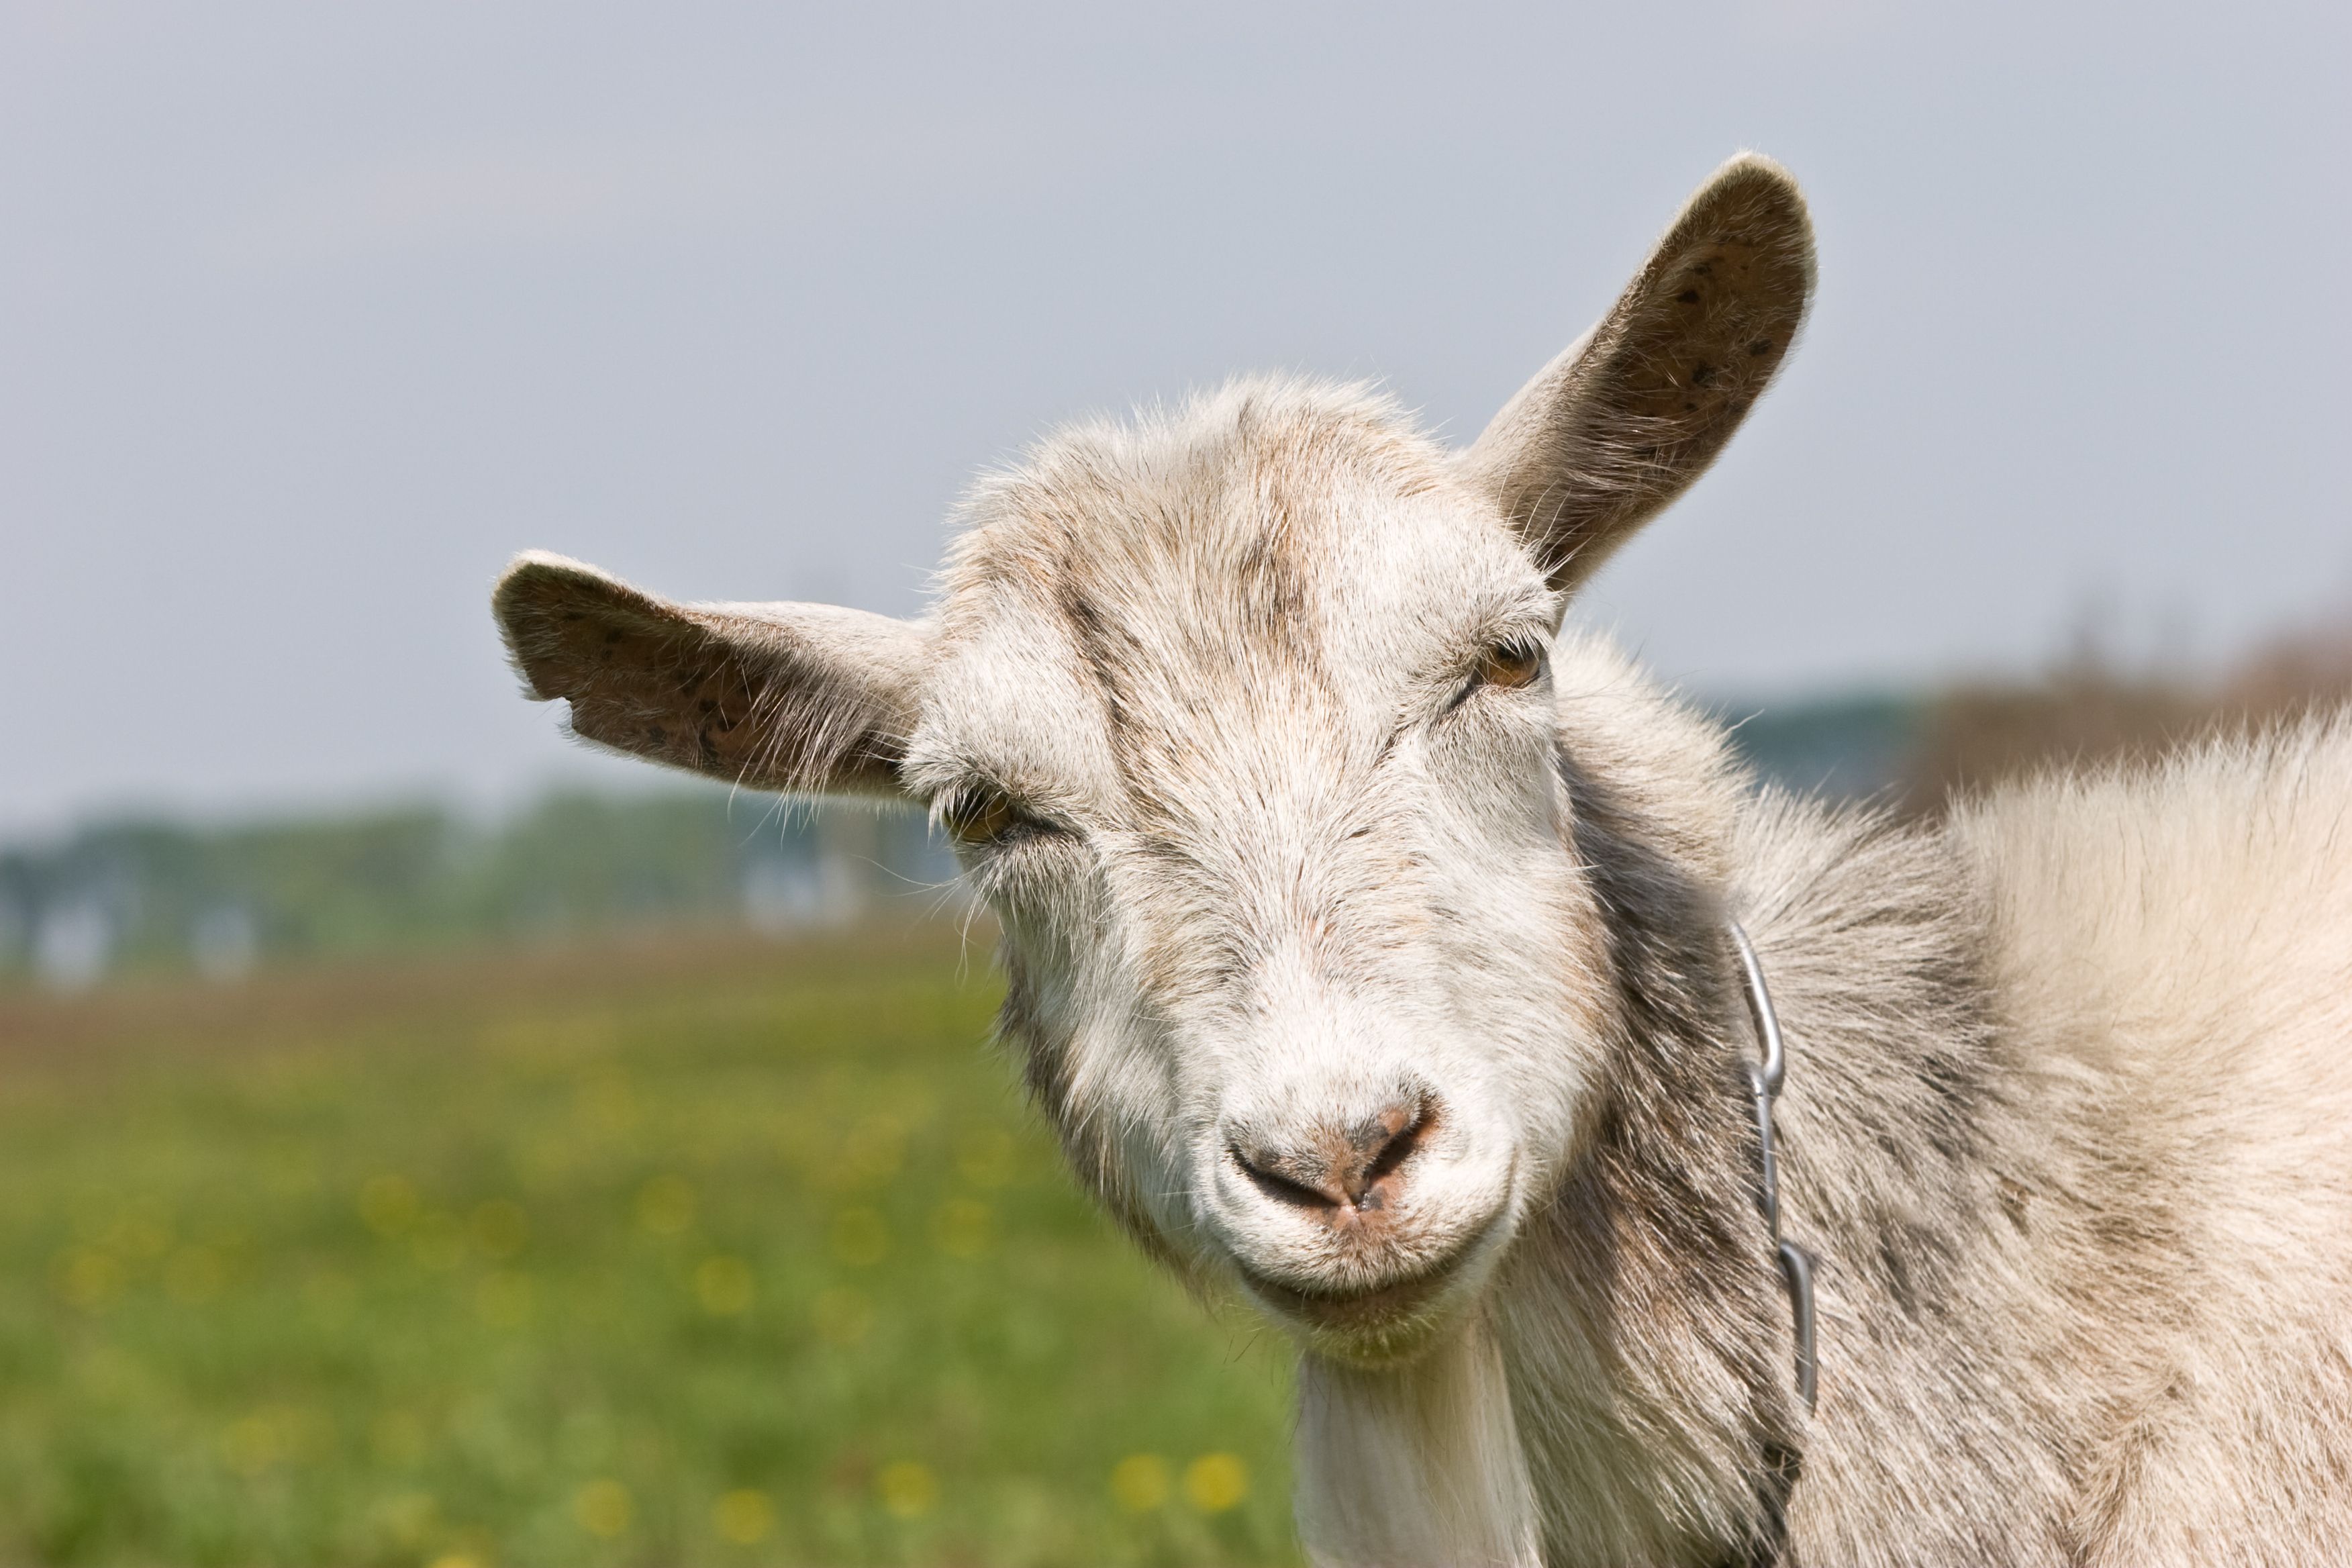 Las cabras diferencian entre el tono alegre o enfadado de la voz humana. BigStock